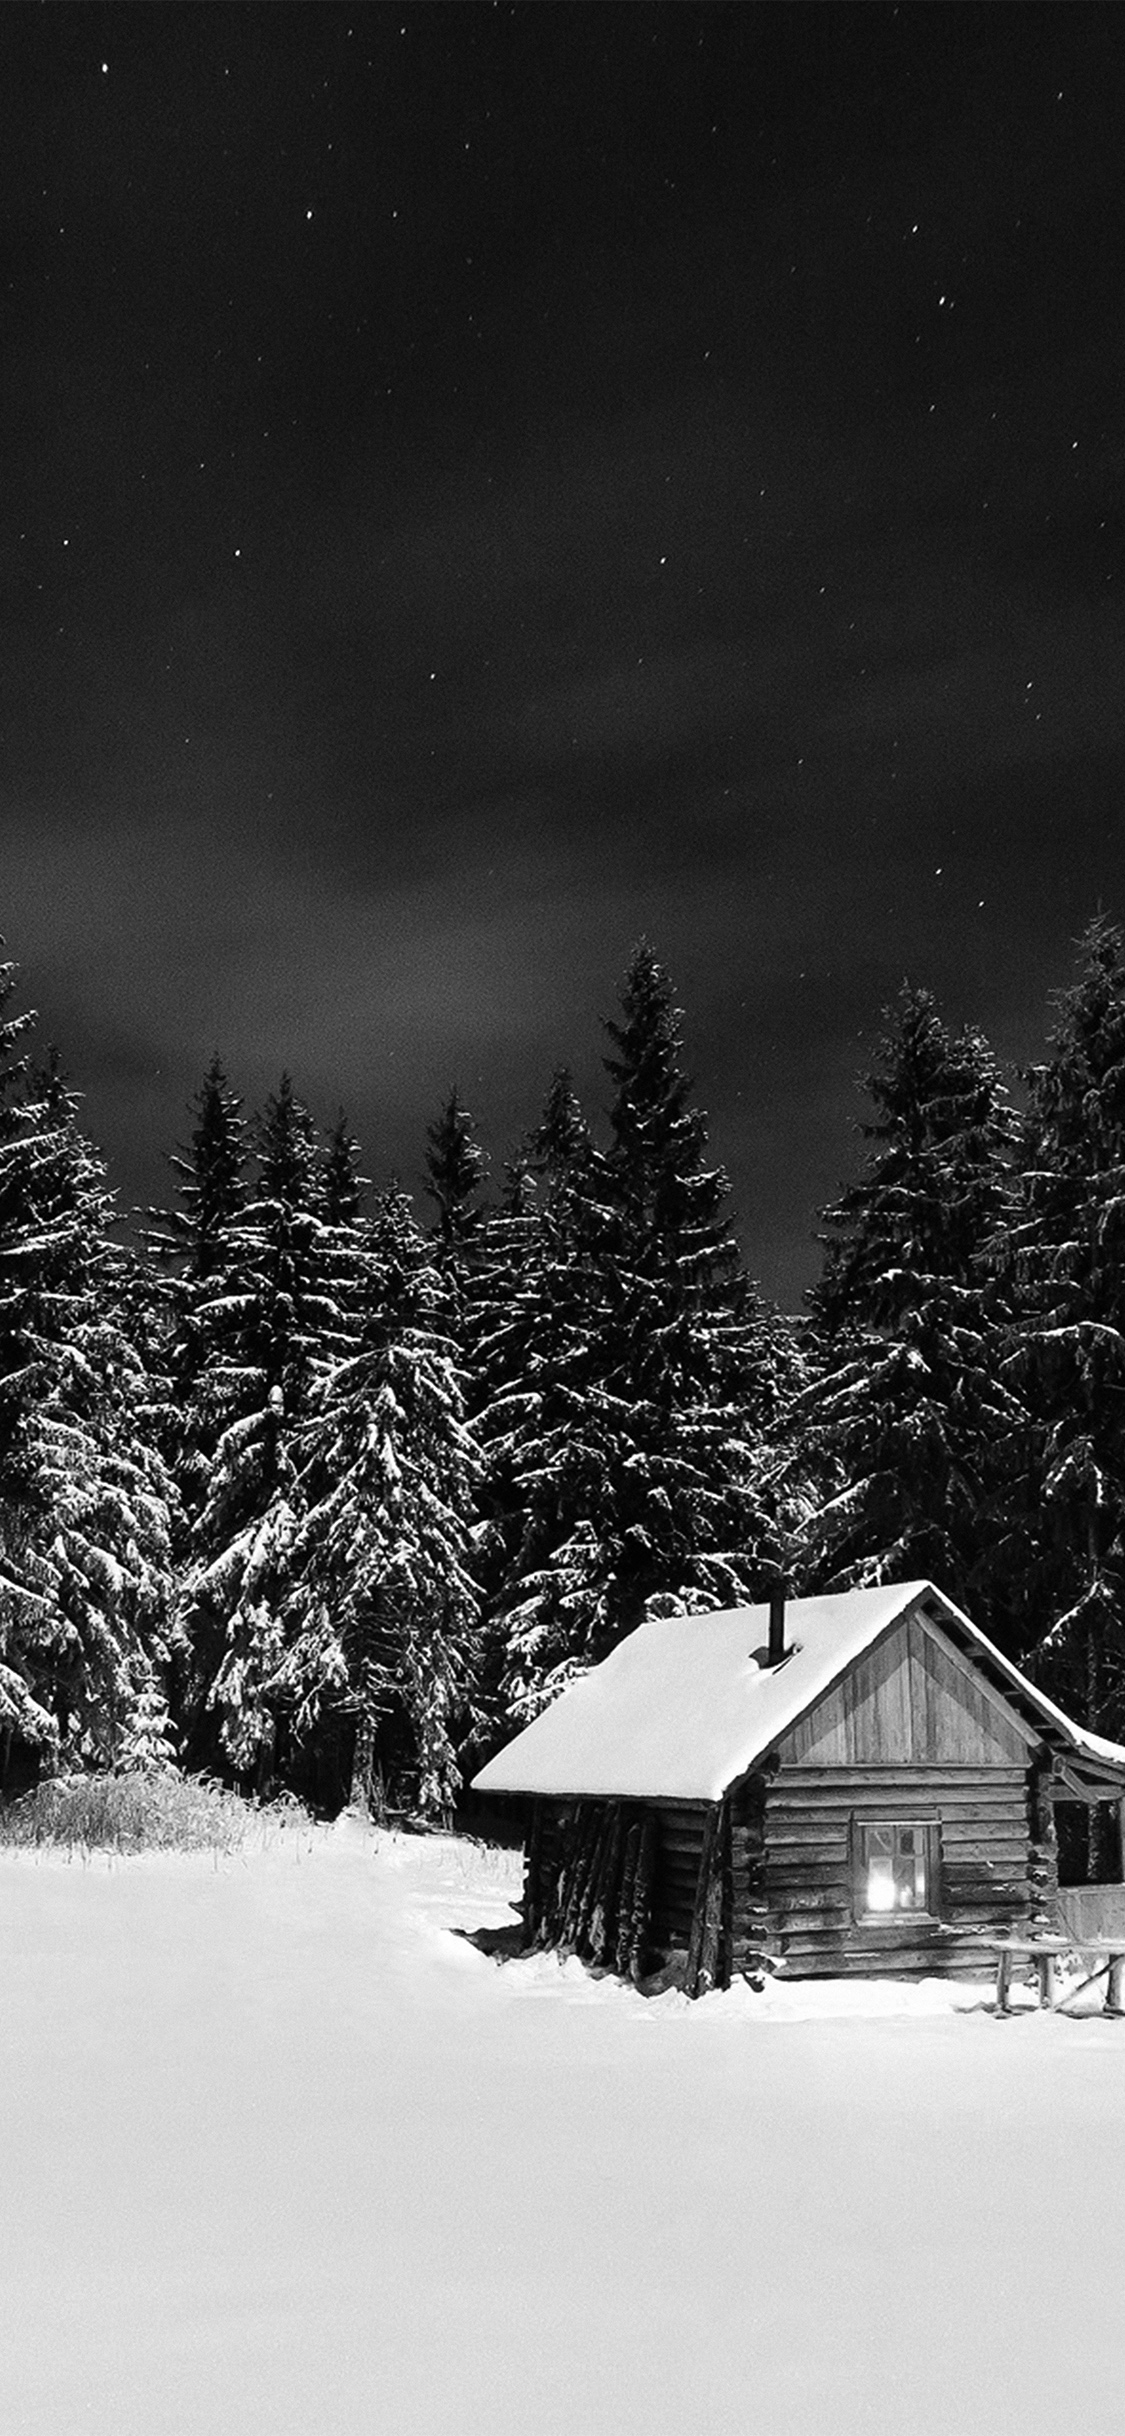 winter house night sky christmas starry bw dark